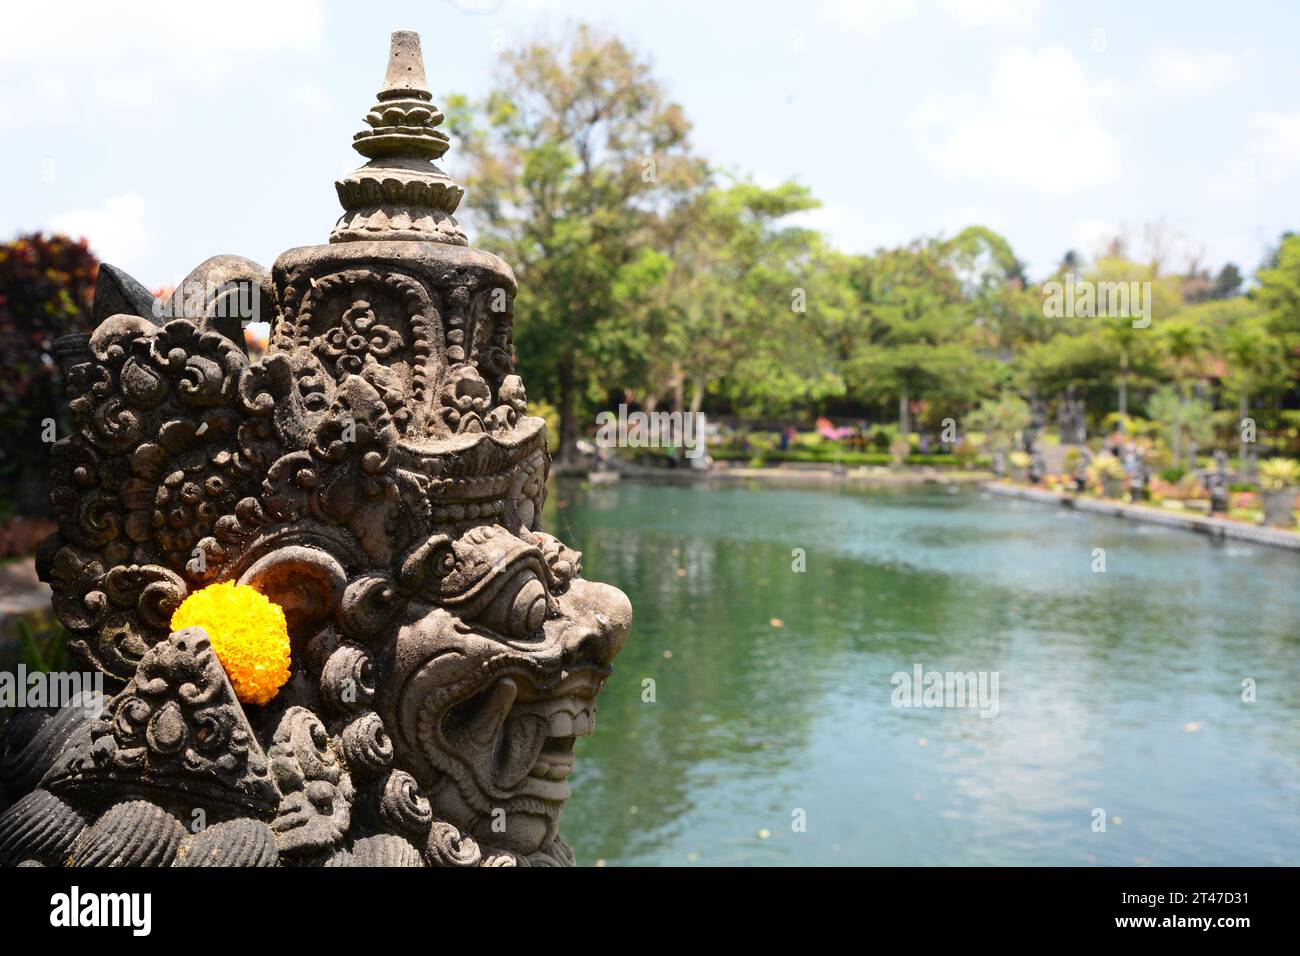 Tirta Gangga water palace statue detail. Karangsem regency. Bali. Indonesia Stock Photo